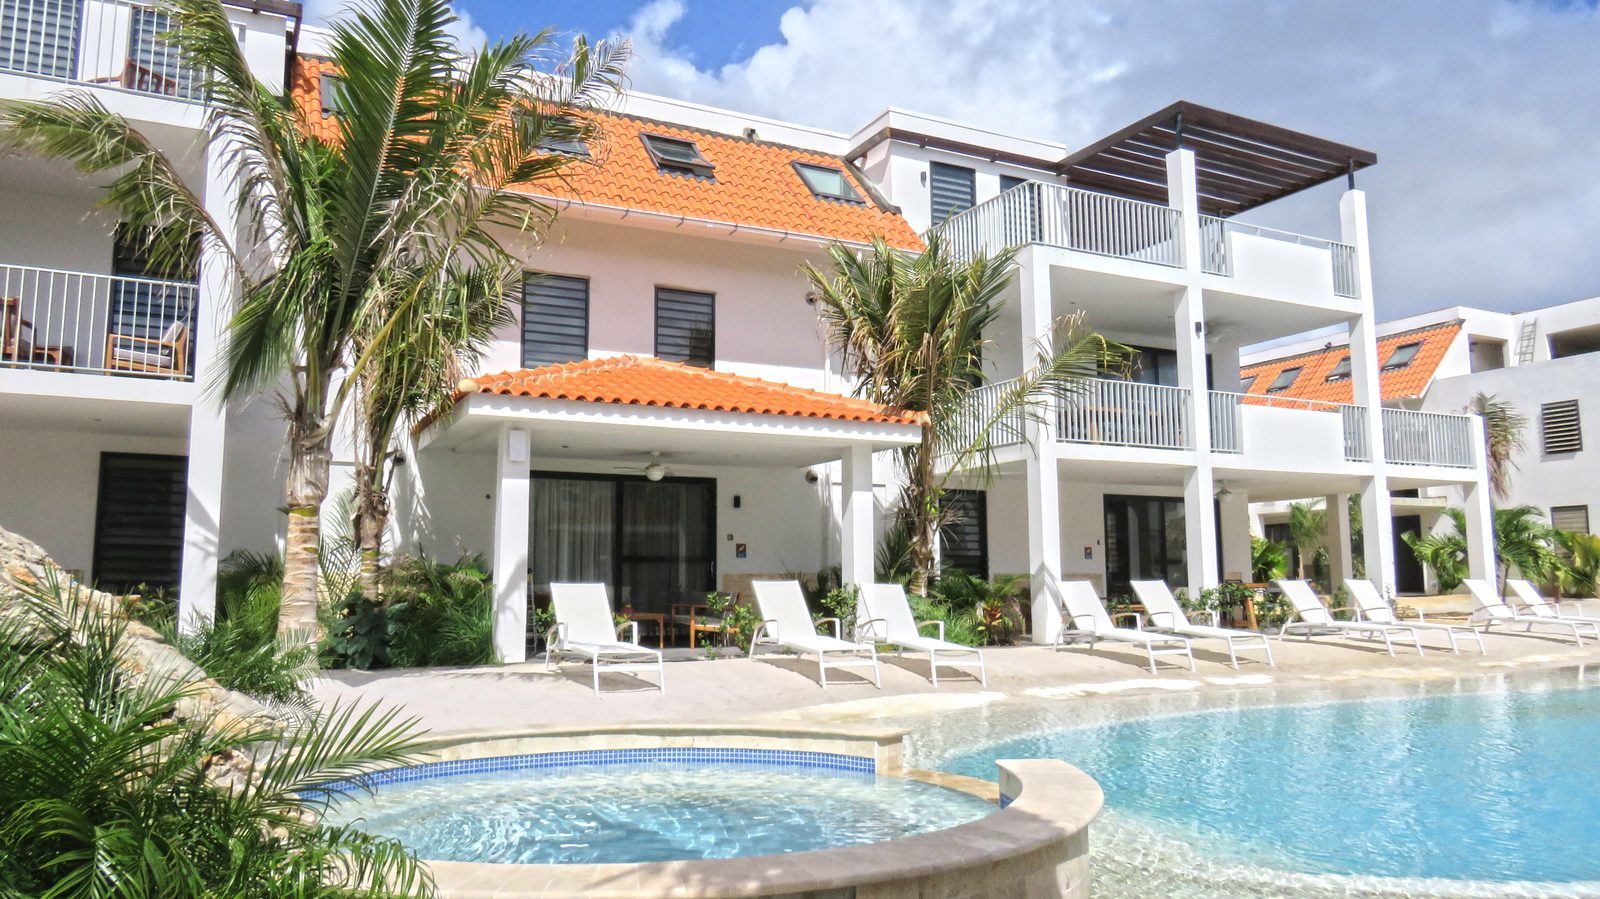 Bekijk Resort Bonaire, een nieuw resort op het mooie Bonaire. De luxe appartementen op Resort Bonaire zijn geschikt voor vier en zes personen.